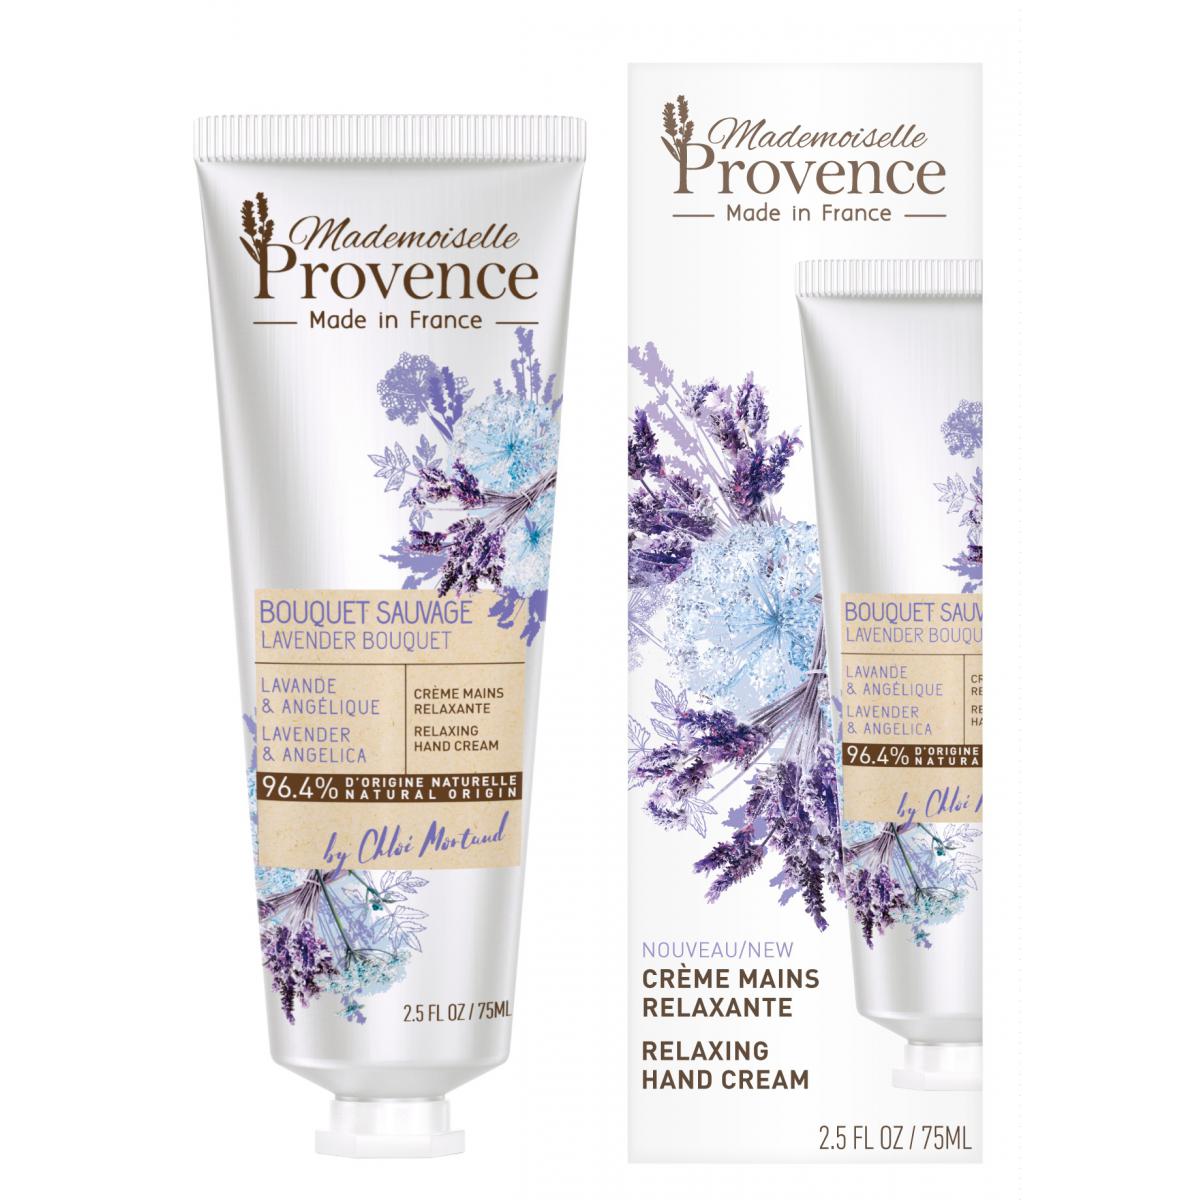 Crème mains 96,4% NATURELLE relaxante - LAVANDE & ANGELIQUE Mademoiselle Provence Beauté